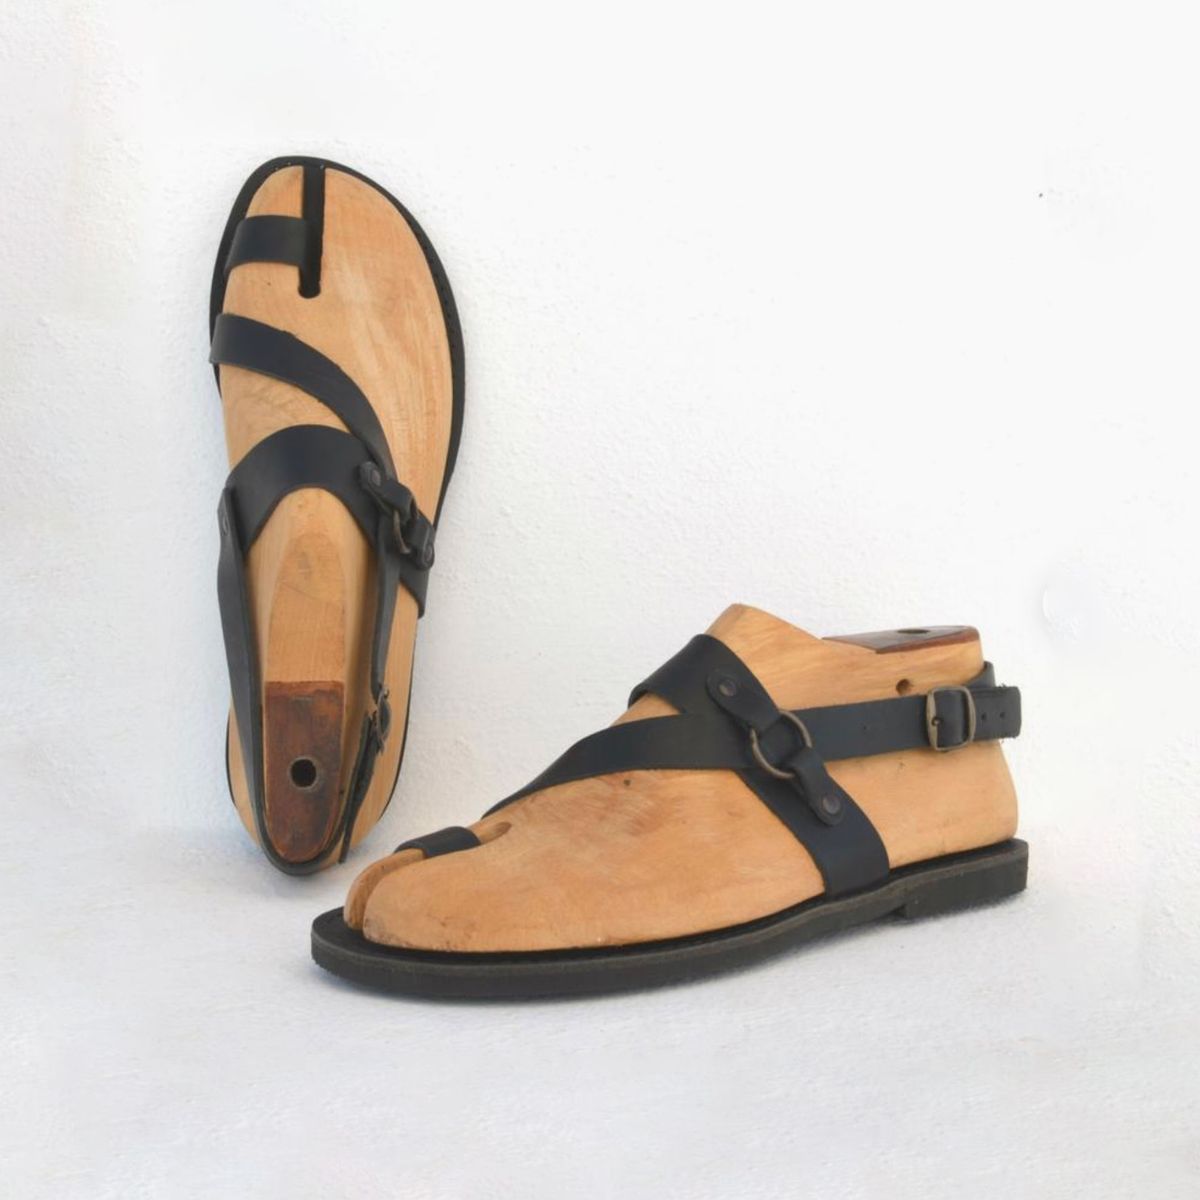 sandals for men 2020